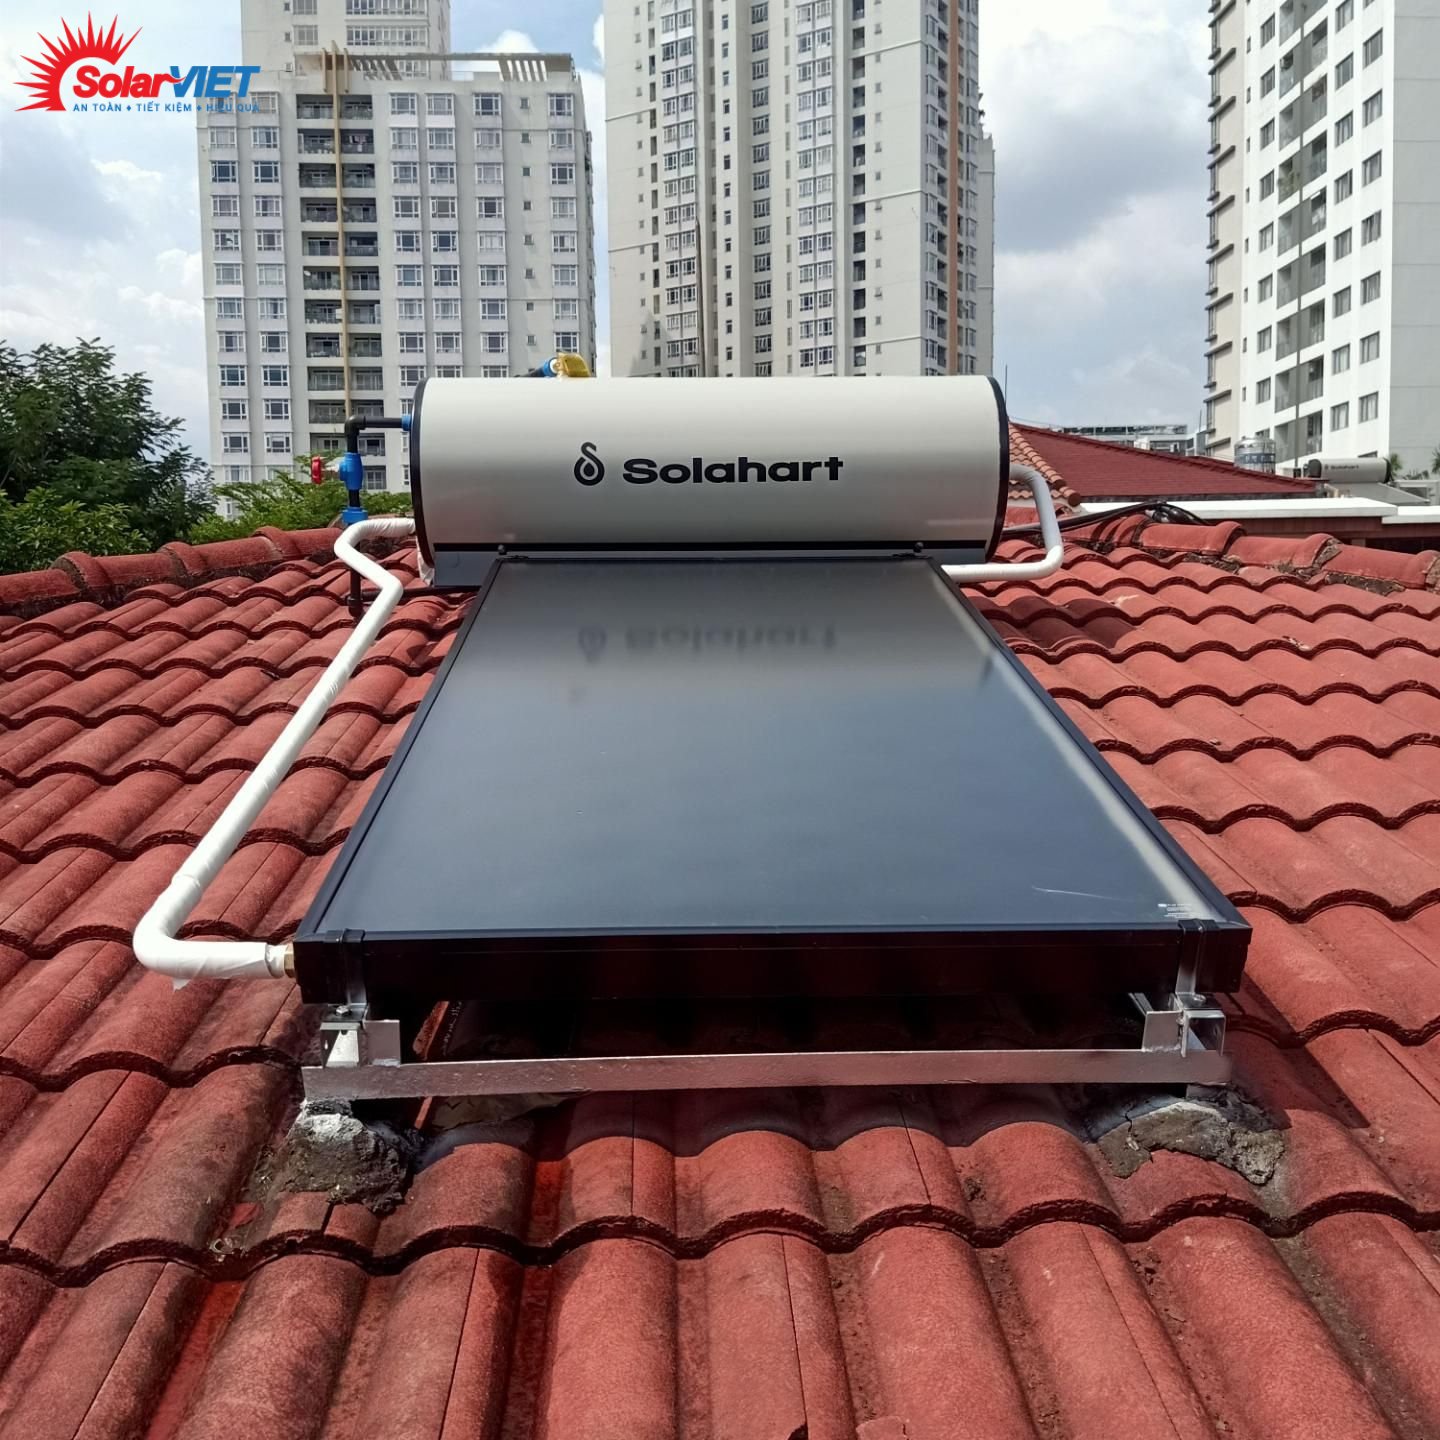 Read more about the article Solahart Sunheat 150 lit – Máy năng lượng mặt trời cao cấp được tin dùng nhất hiện nay